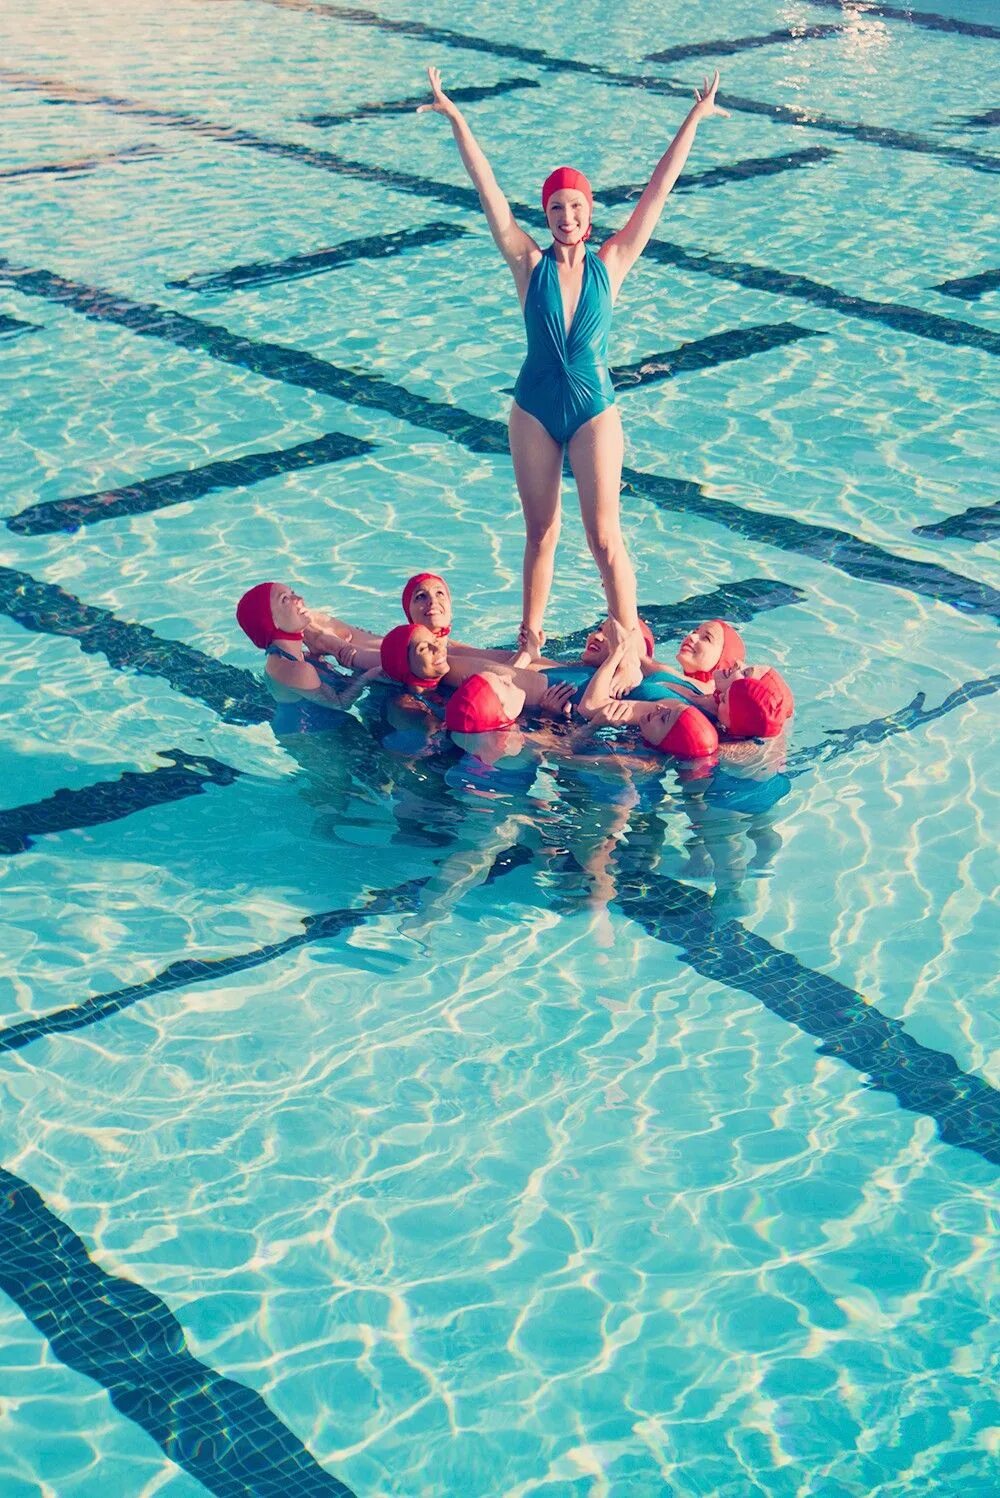 Идеи для фото в бассейне. Фотосессия в бассейне. Девочки в бассейне. Плавание в бассейне. Летняя фотосессия у бассейна.